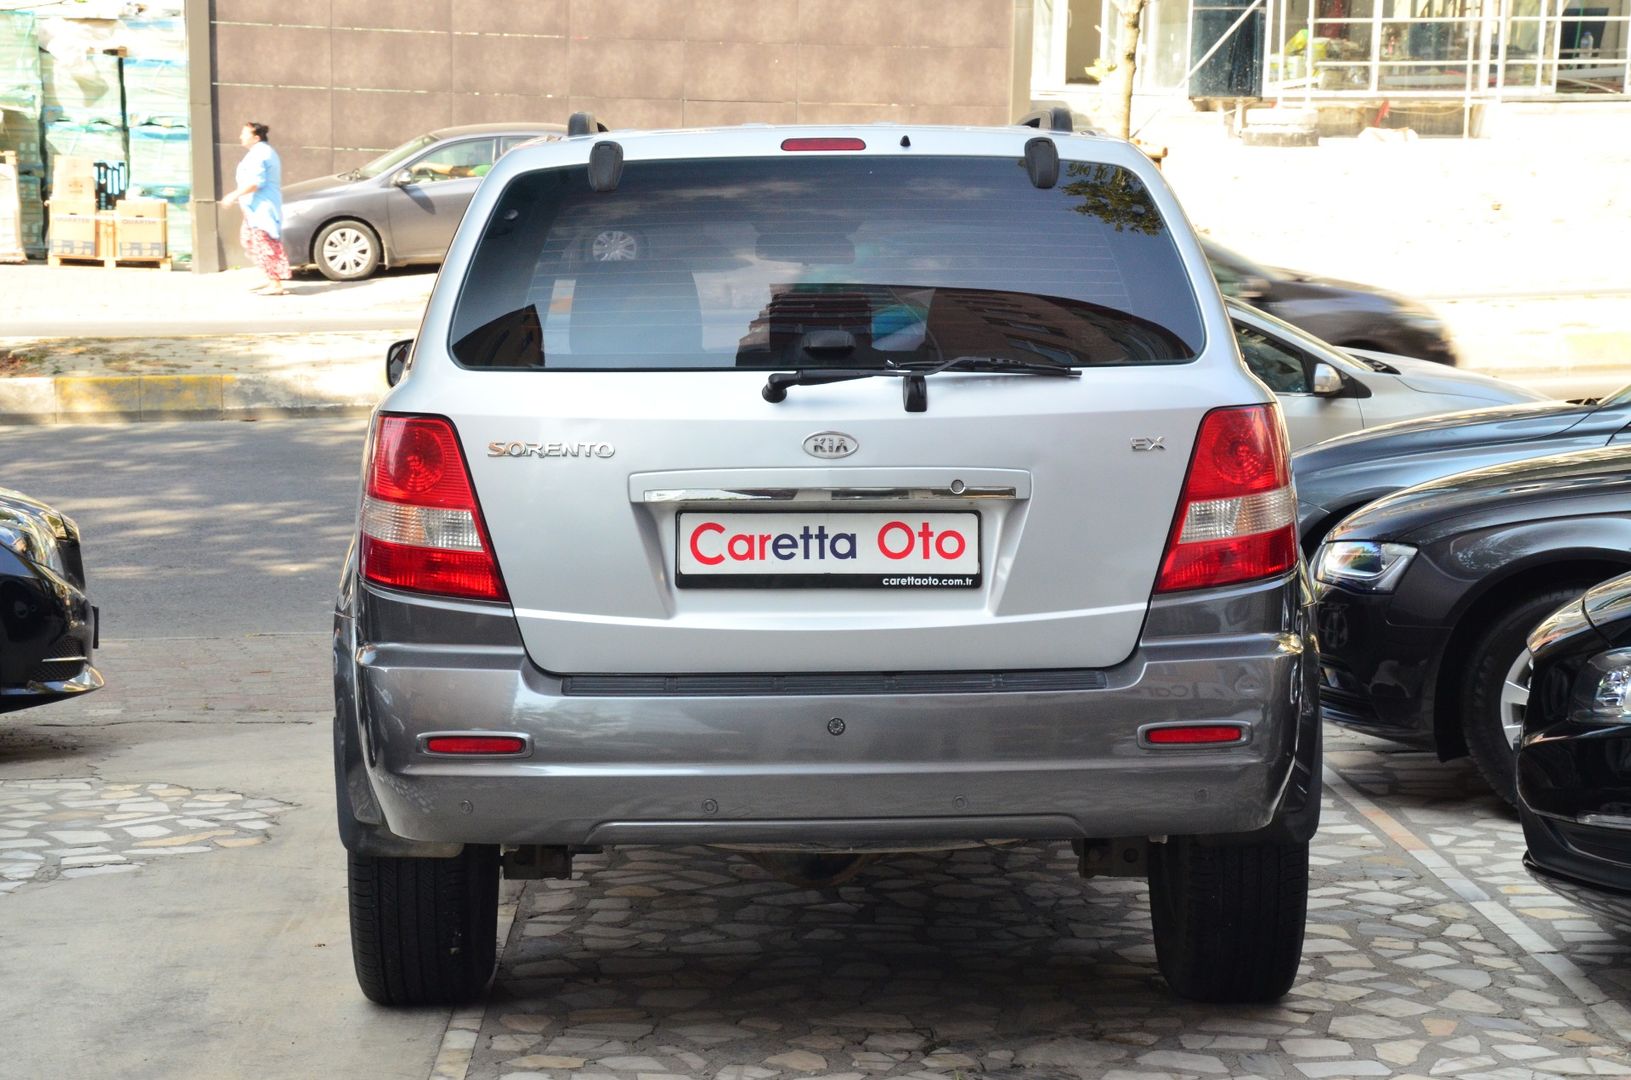 Caretta'dan, 94 Bin Km'de Eşsiz Temizlikte Sorento 2.5 CRDi-3